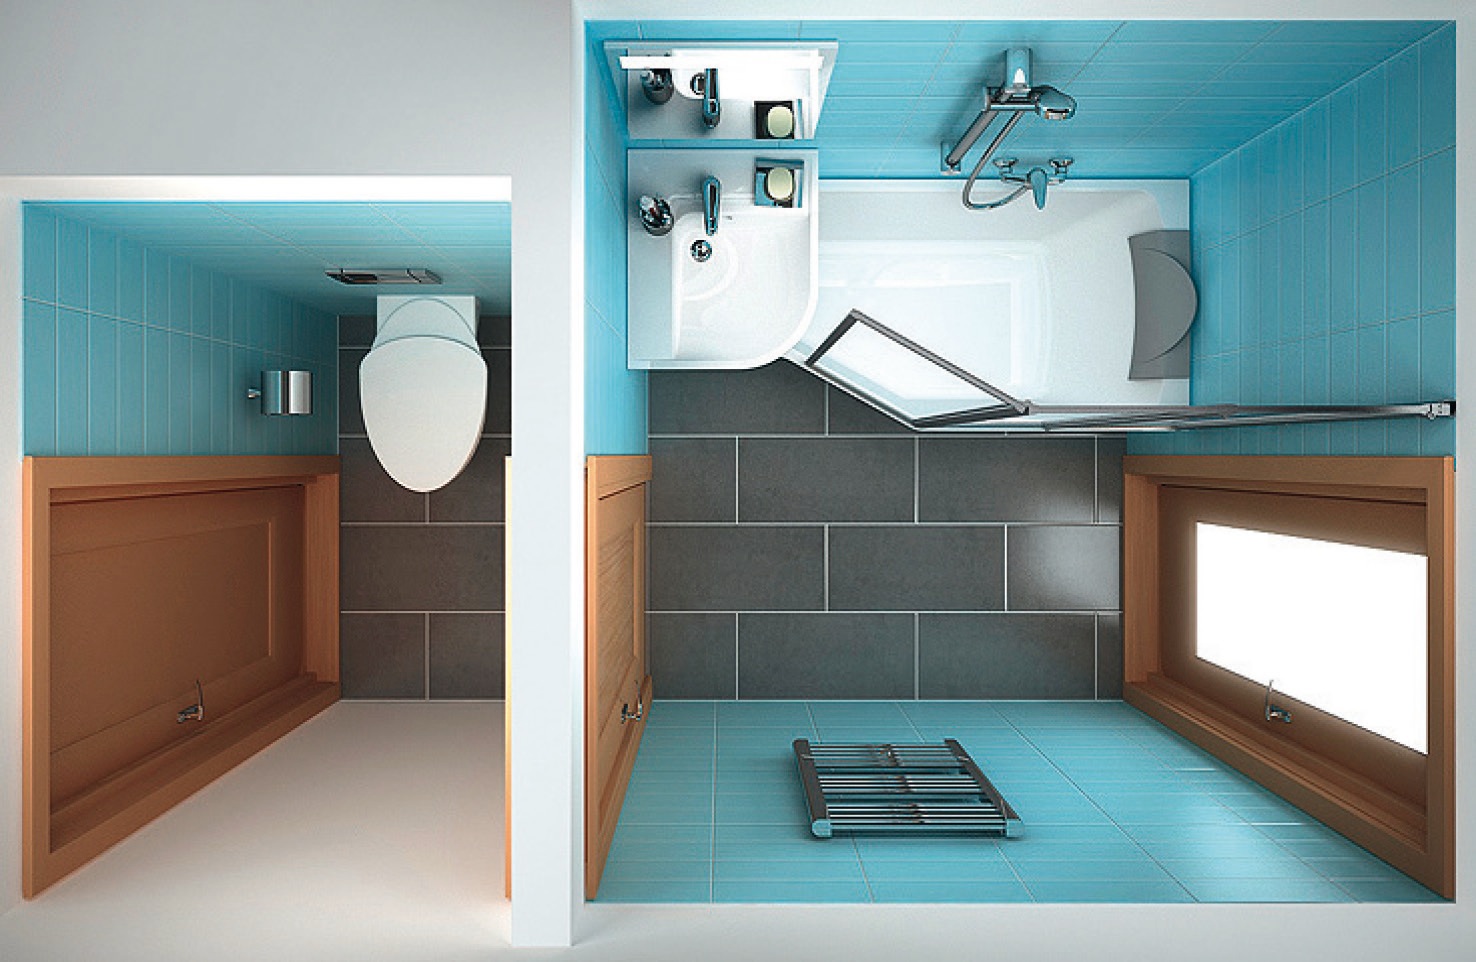 BeHappy koncepciónk kádja és mosdókagylója, valamint fürdőszoba bútorai a legkisebb fürdőszobában is gond nélkül elférnek.